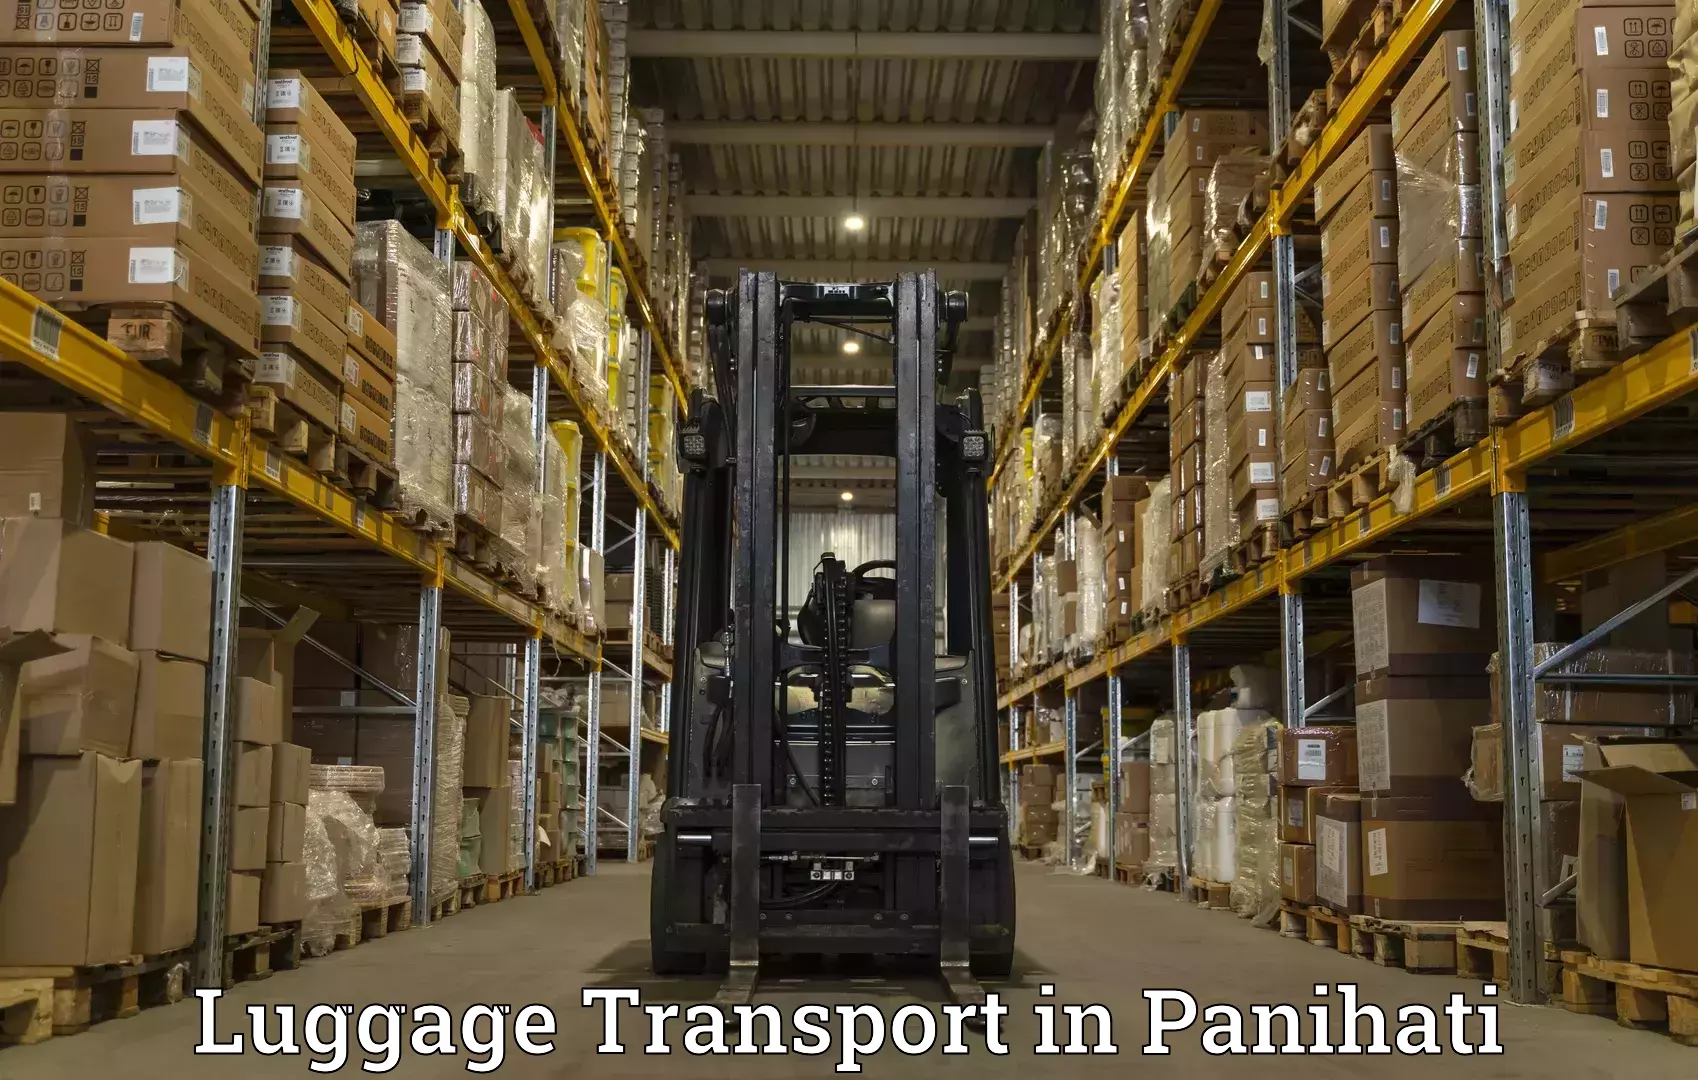 Luggage shipping solutions in Panihati